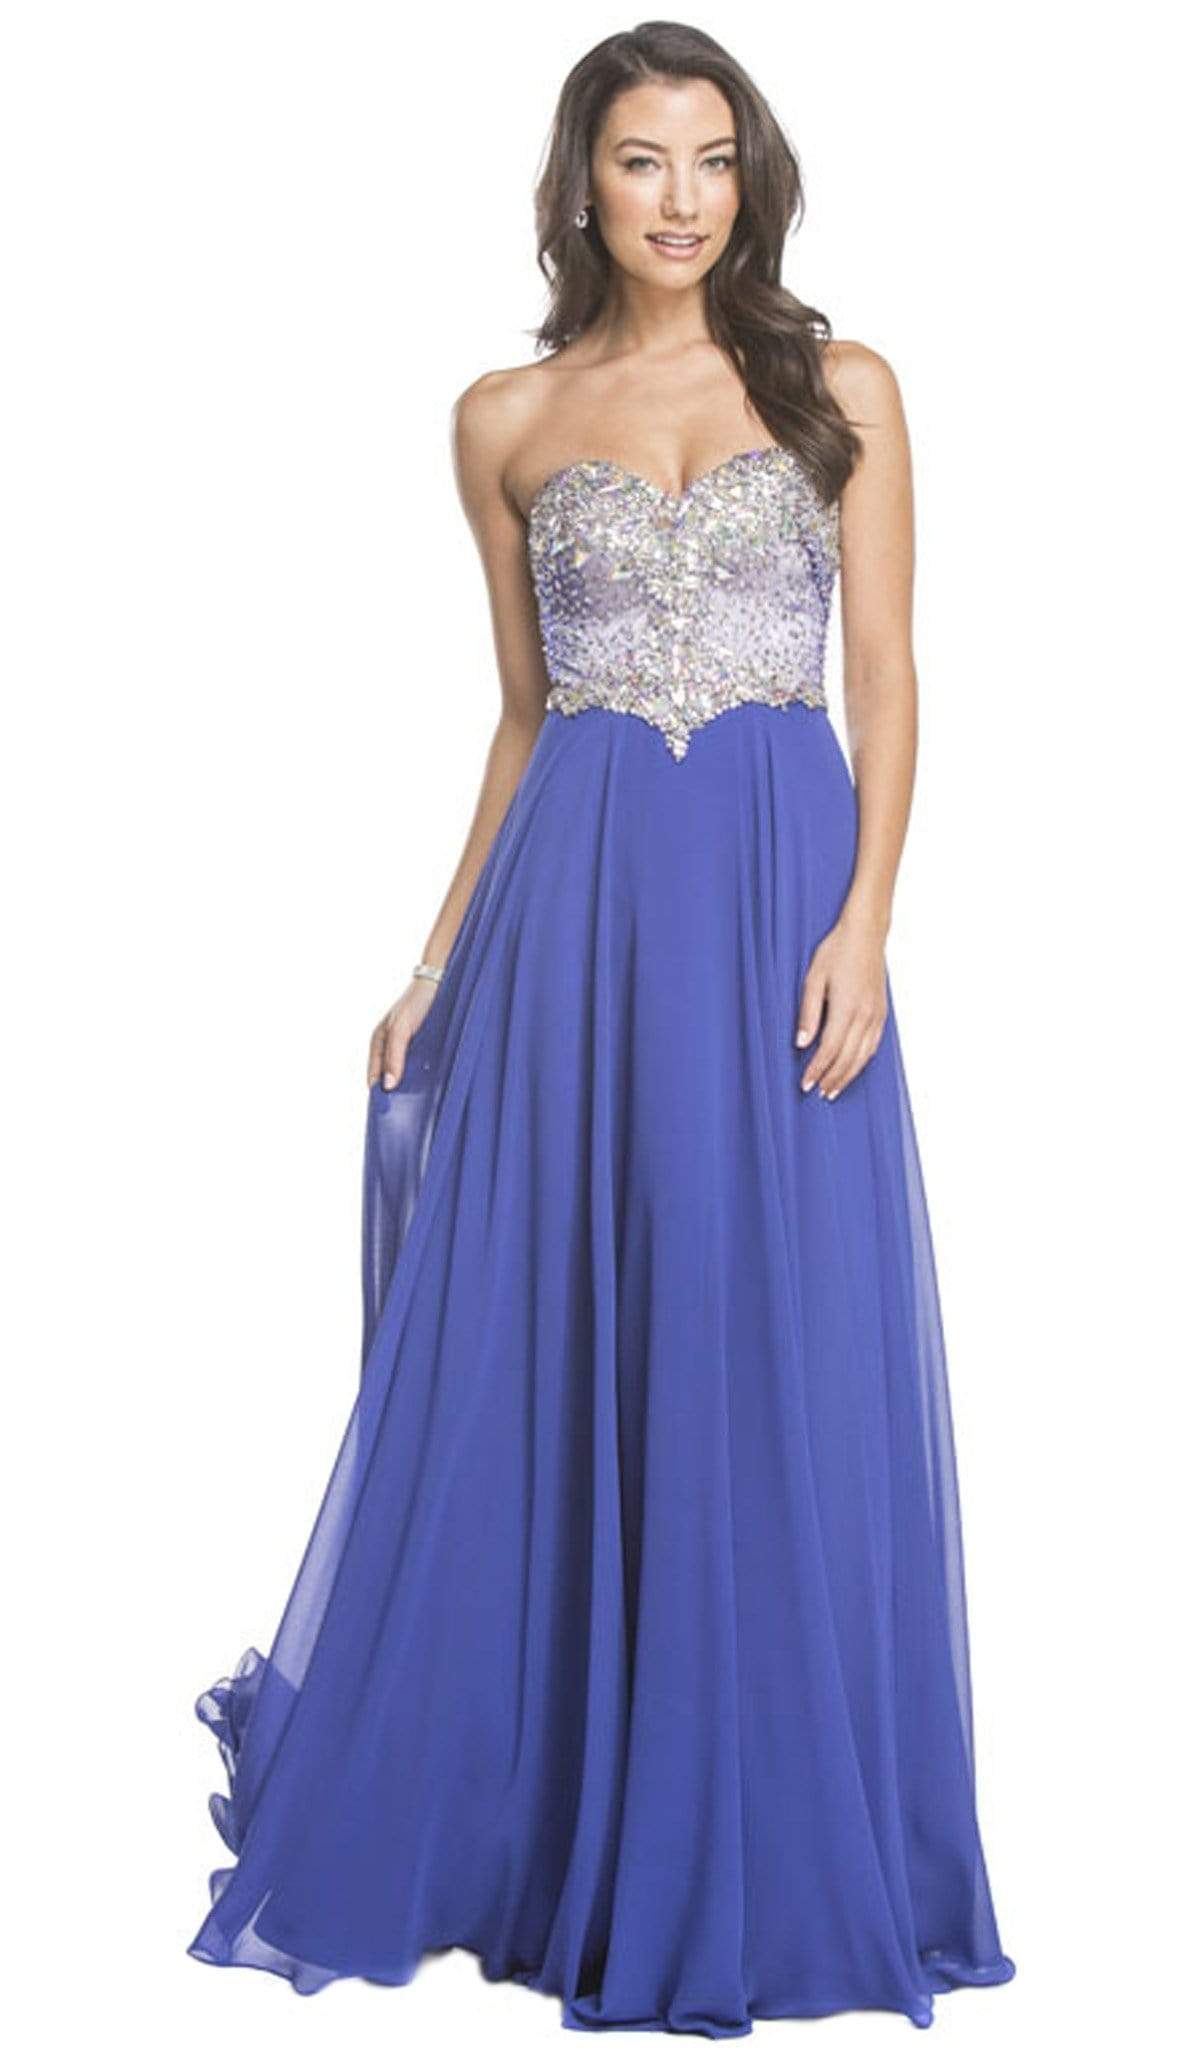 Aspeed Design - Crystal Embellished Evening A-Line Dress
